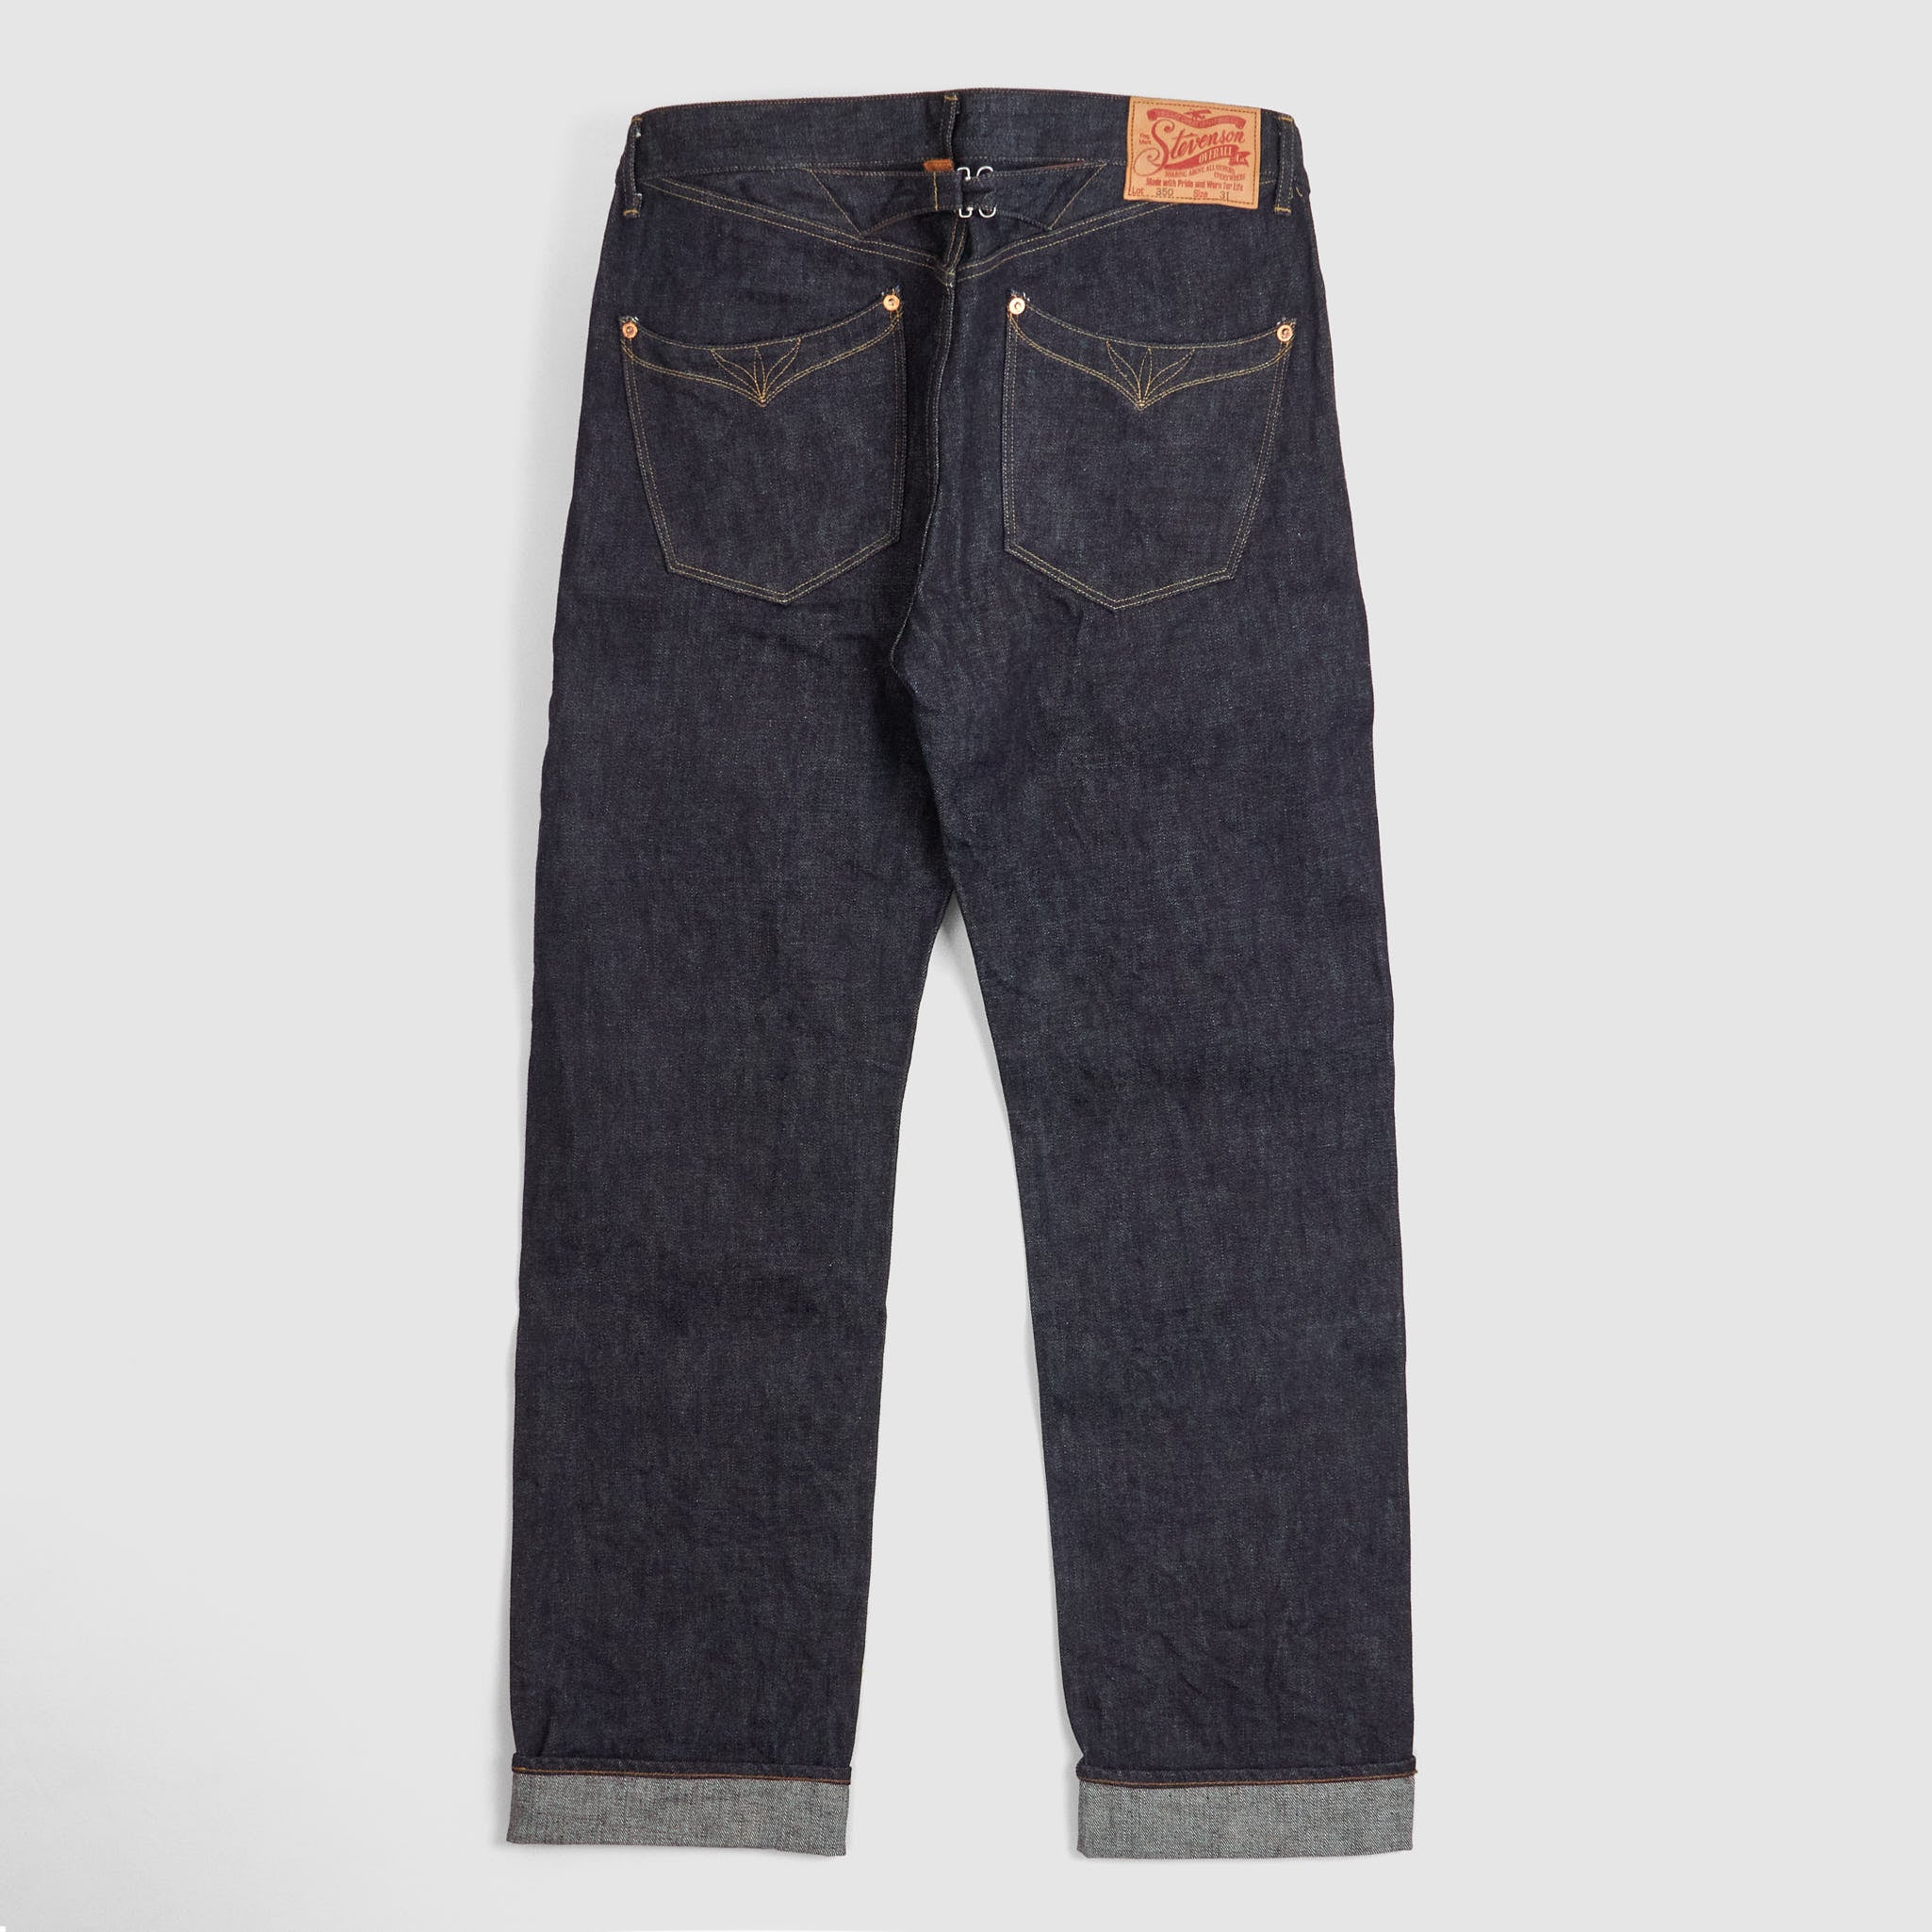 Stevenson Overall CO. Cinch Back Western Denim Jeans - DeeCee style